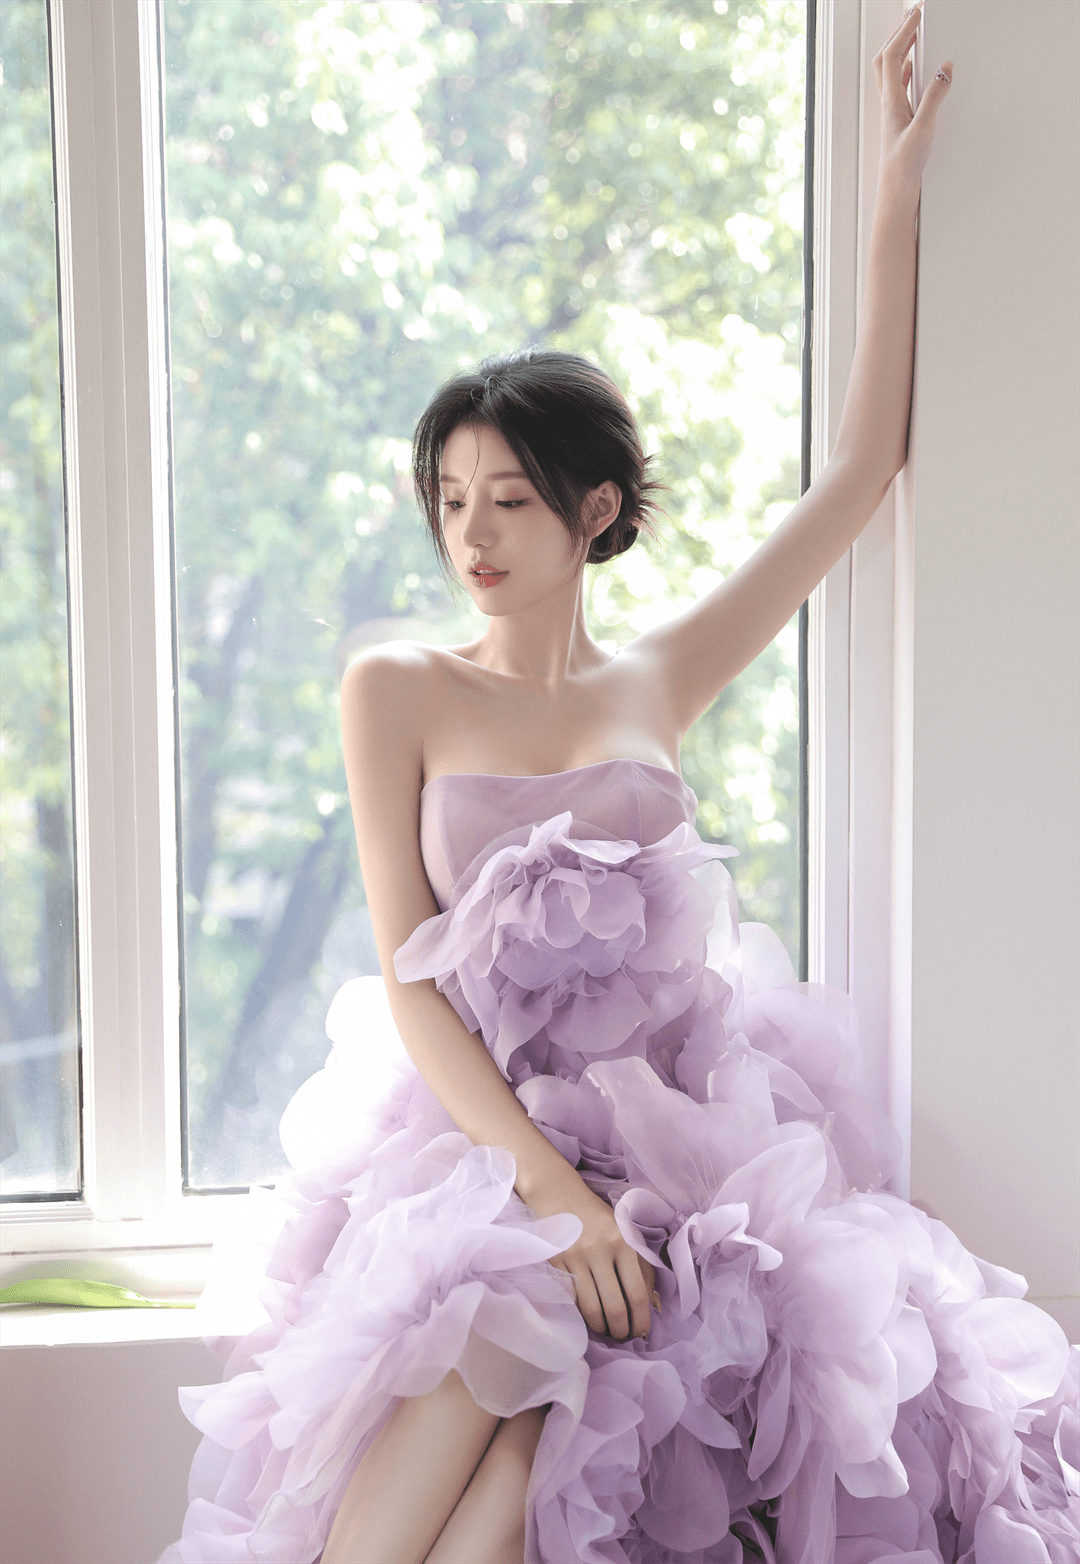 紫色吊带裙美女丰满高挑身材性感写真_美女图片_mm4000图片大全